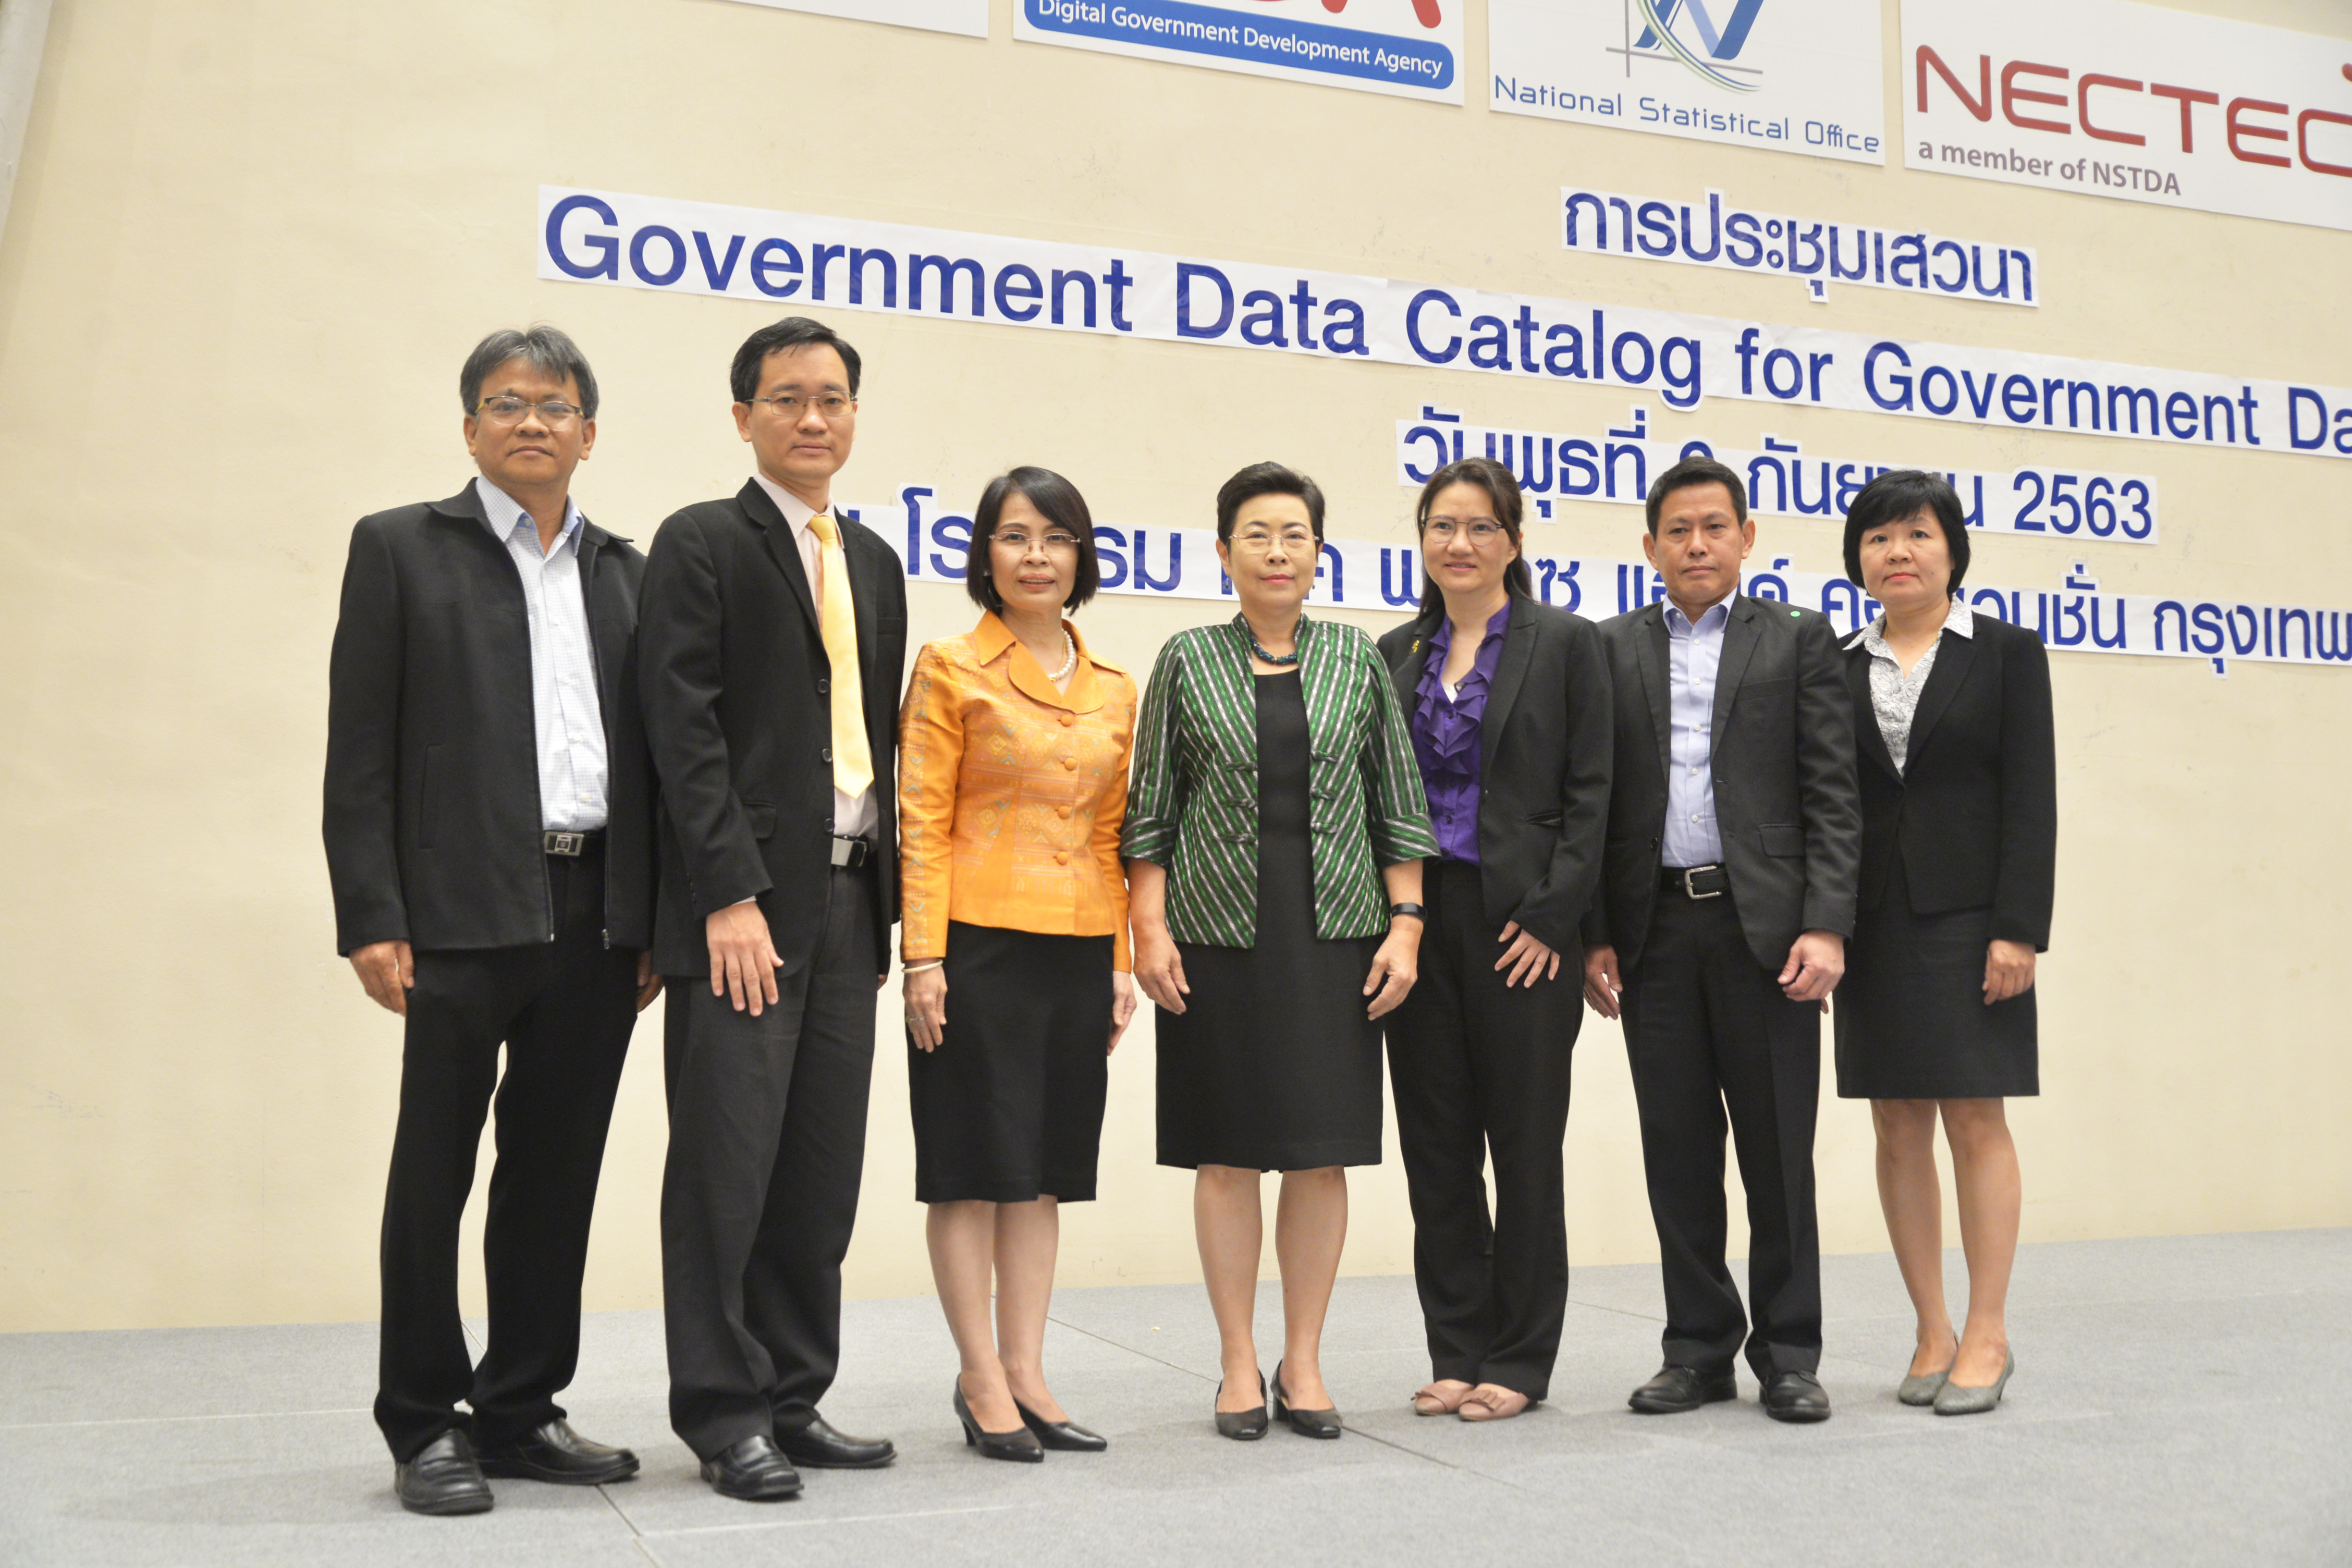 ประชุมเสวนา “Government Data Catalog for Government Data Service”